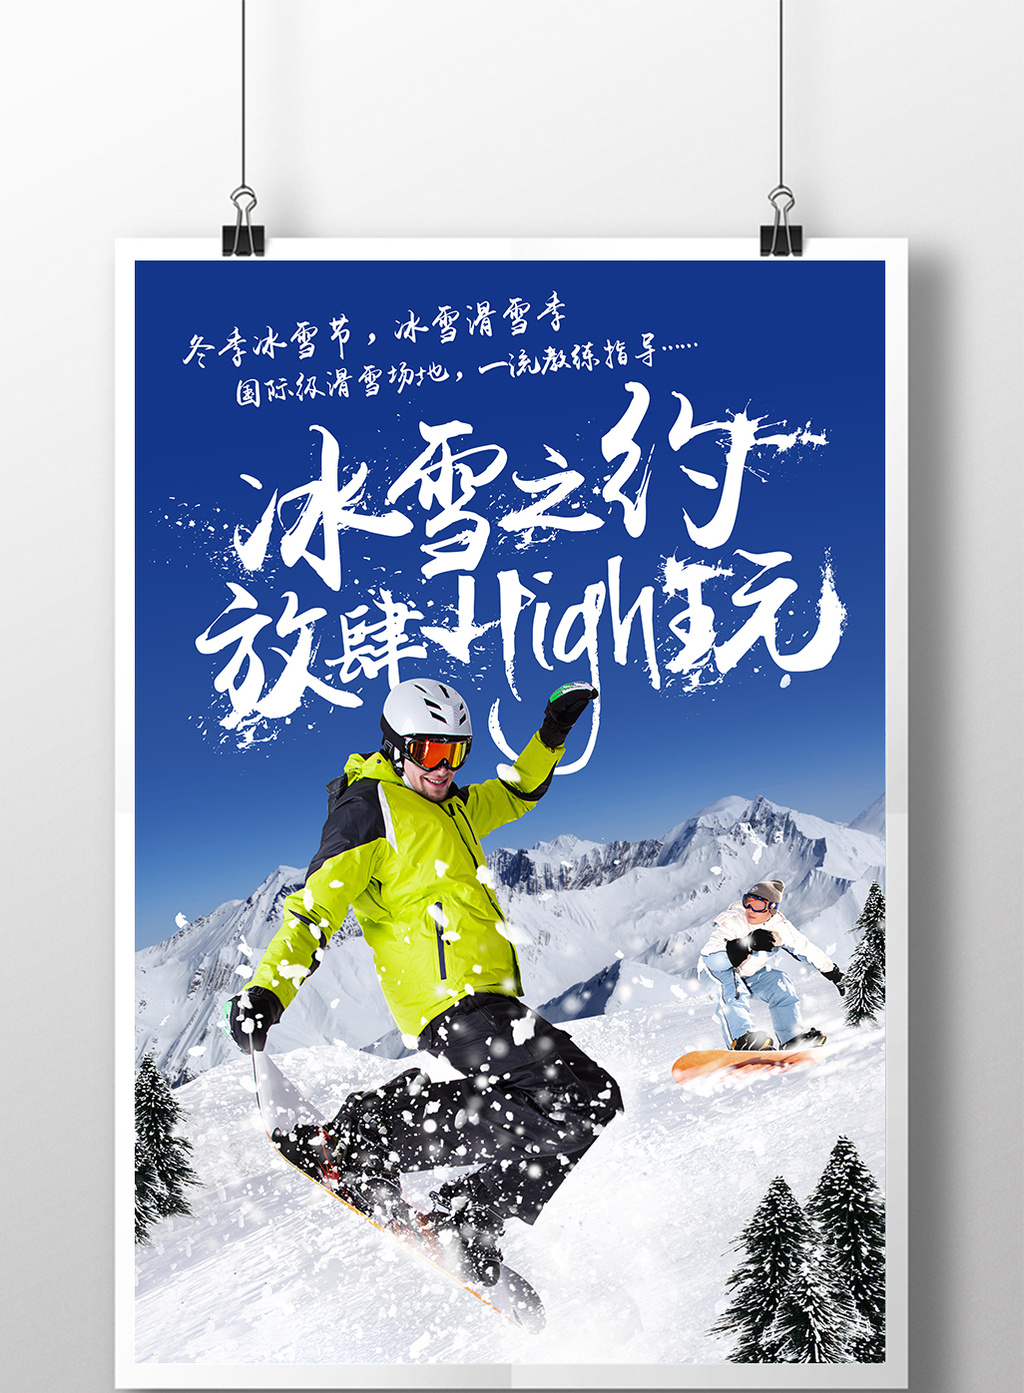 的冬季冰雪节滑雪季旅游海报素材免费下载,本次作品主题是广告设计图片